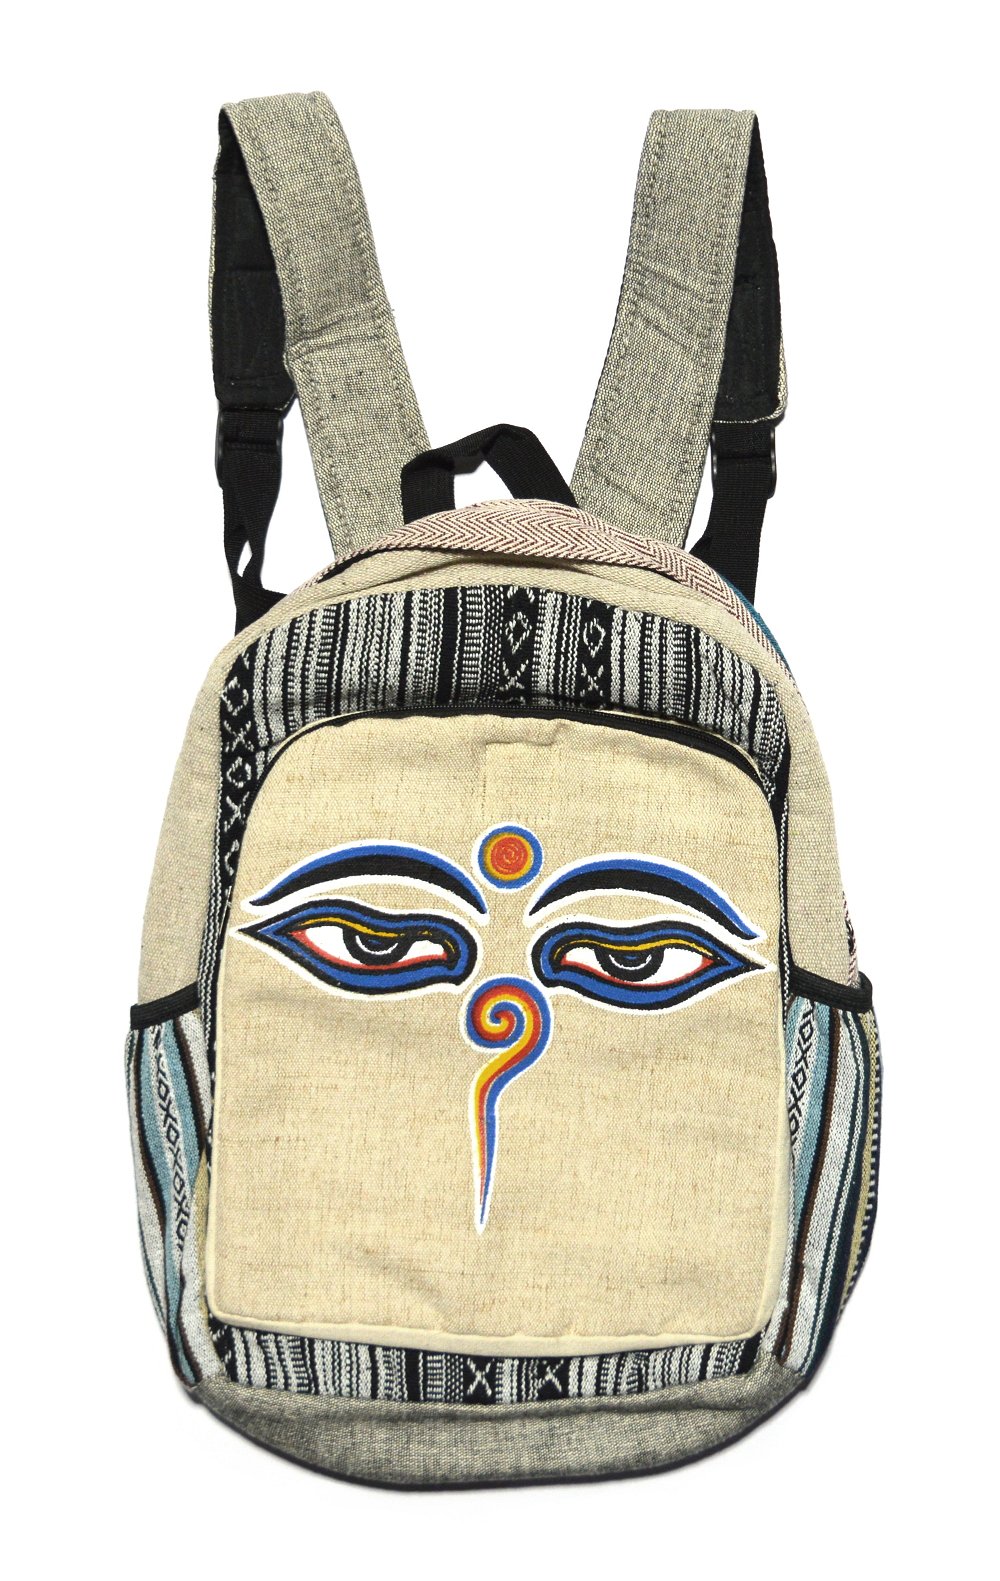 Рюкзак c Глазами Будды, черные и белые полосы, с крестиками-ноликами, 34 х 44 см, 34 x 44 см, Глаза Будды